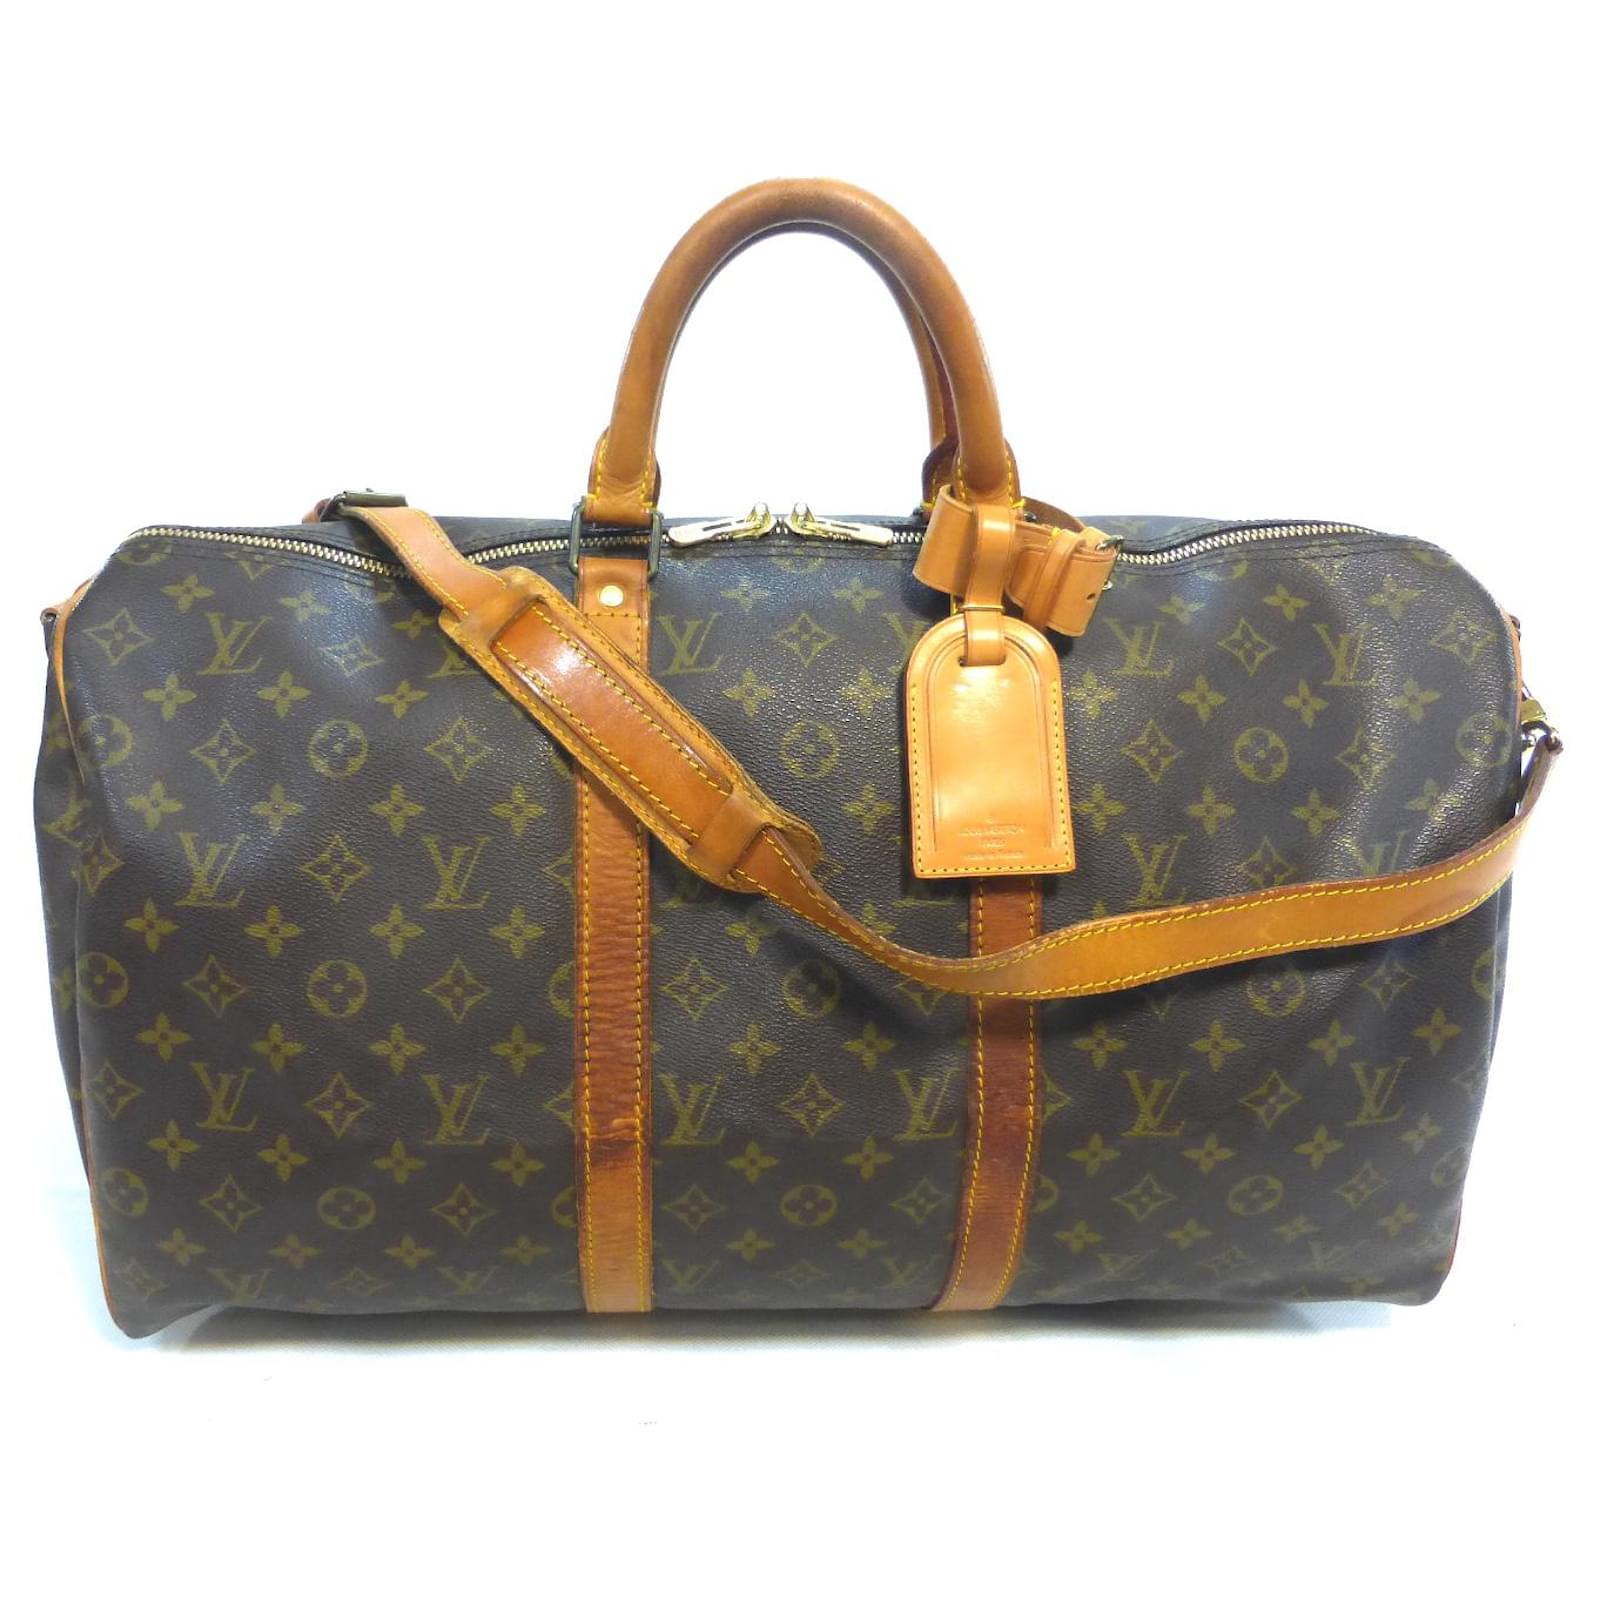 Louis Vuitton Duffle Bag Lightweight